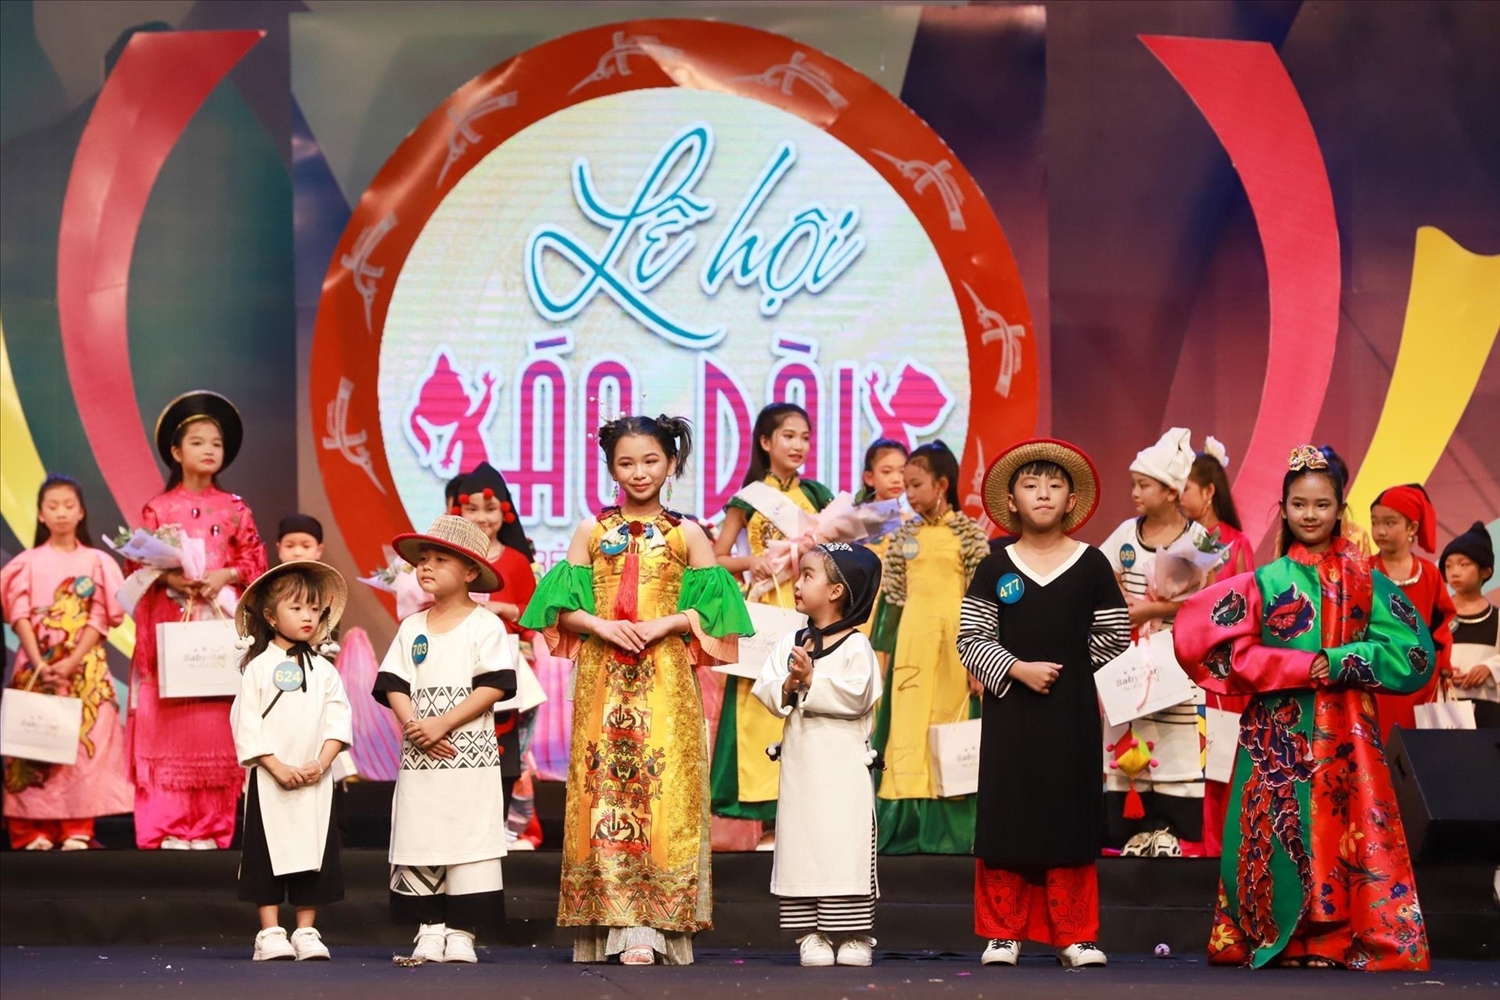  6 Đại sứ Áo dài trẻ em Việt Nam được Ban tổ chức vinh danh. Ảnh: TTXVN